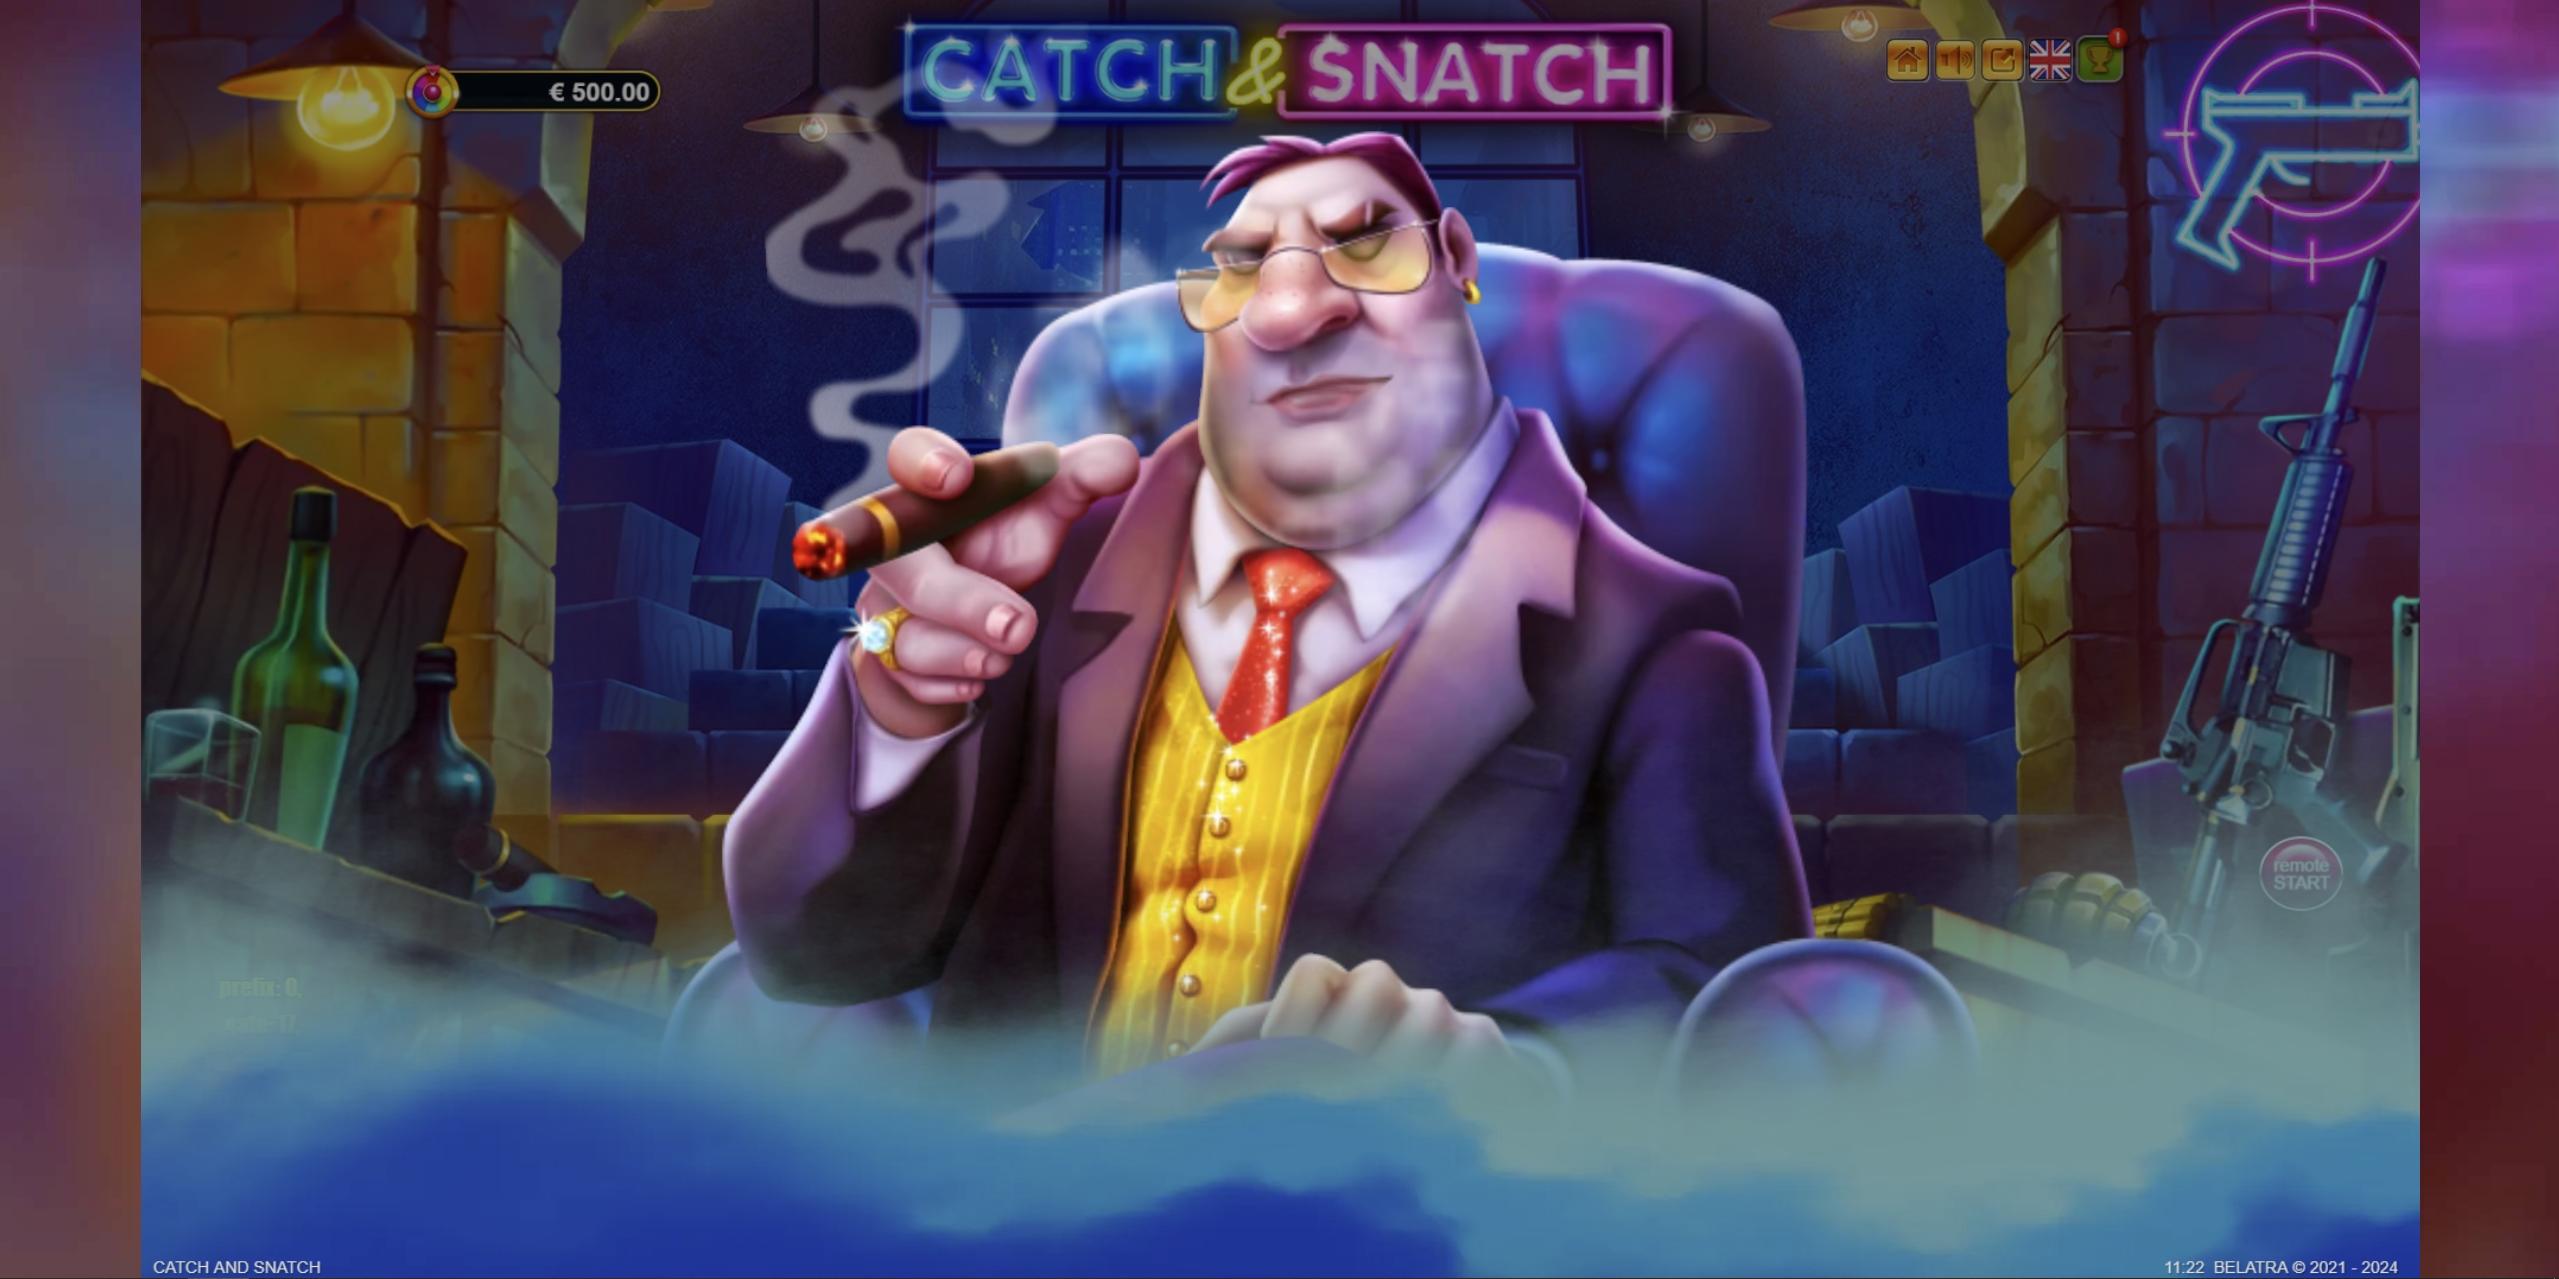 Catch & Snatch | Promotion pack | Online slot